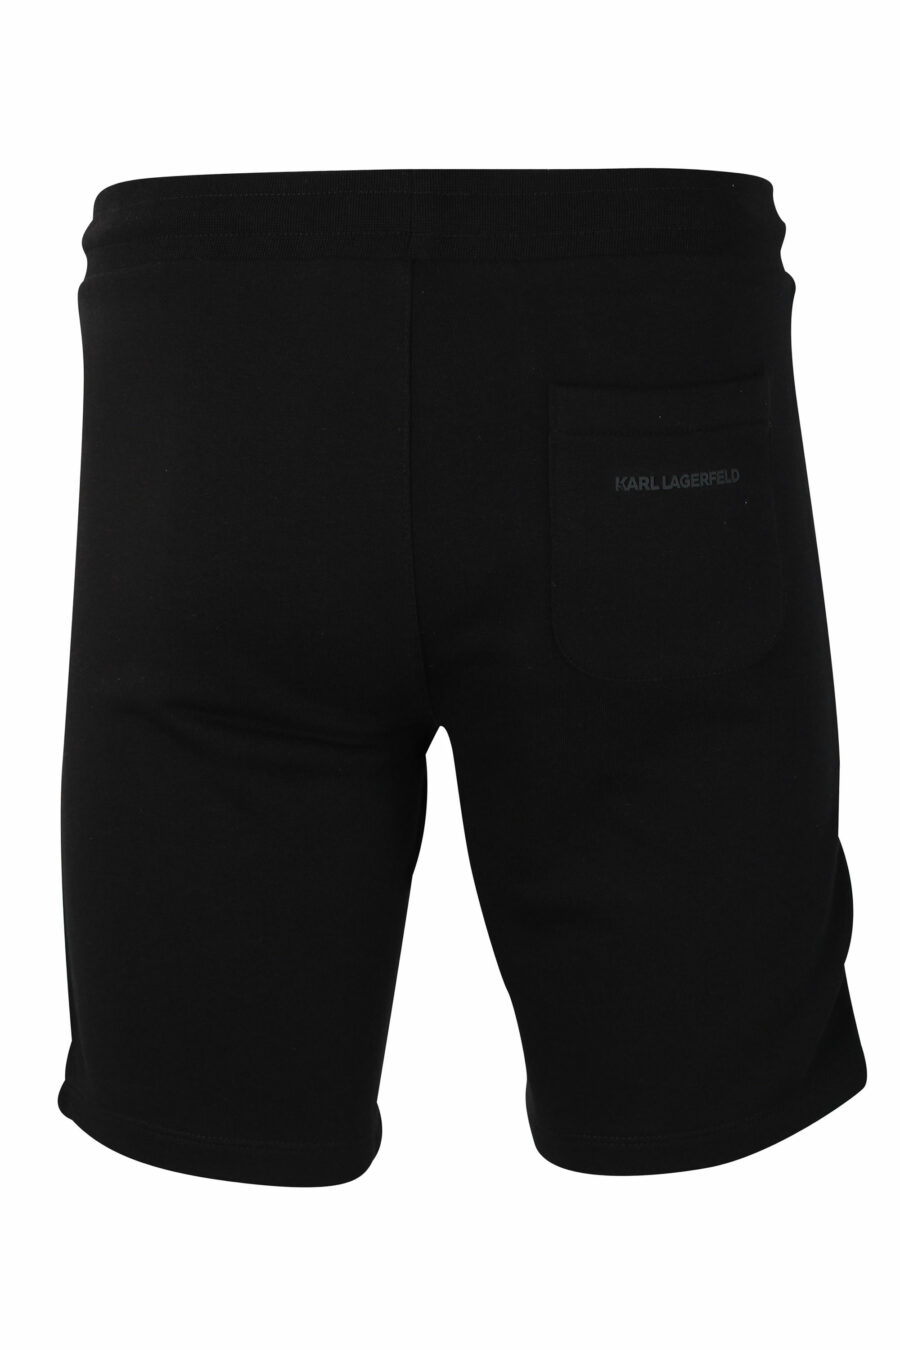 Pantalón de chándal negro corto con logo en silueta blanco - IMG 9894